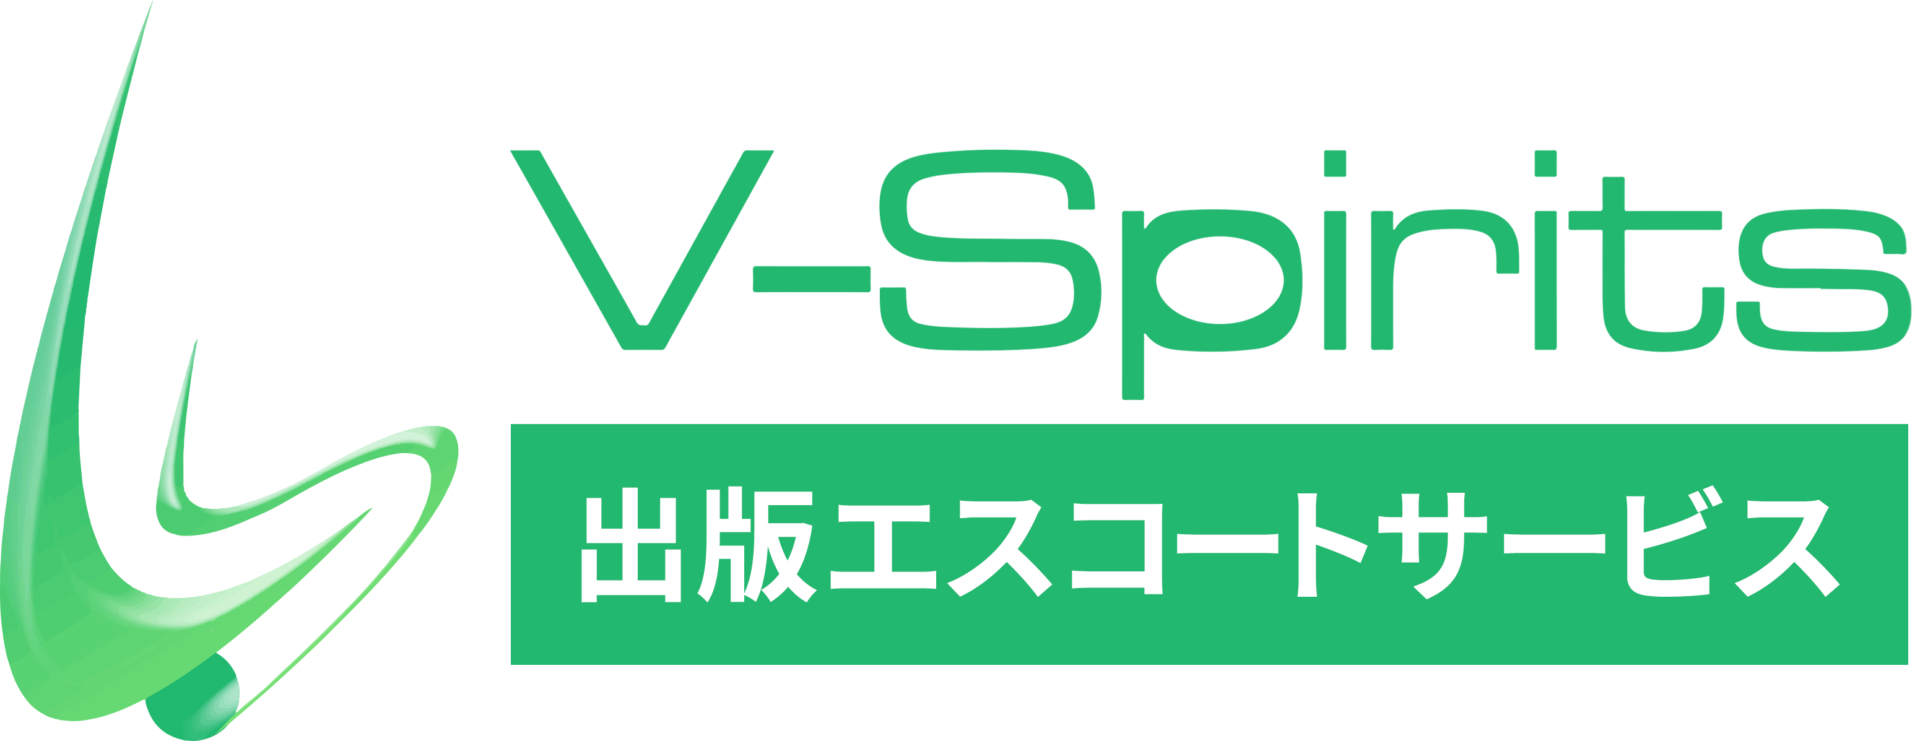 V-Spirits 出版エスコートサービス